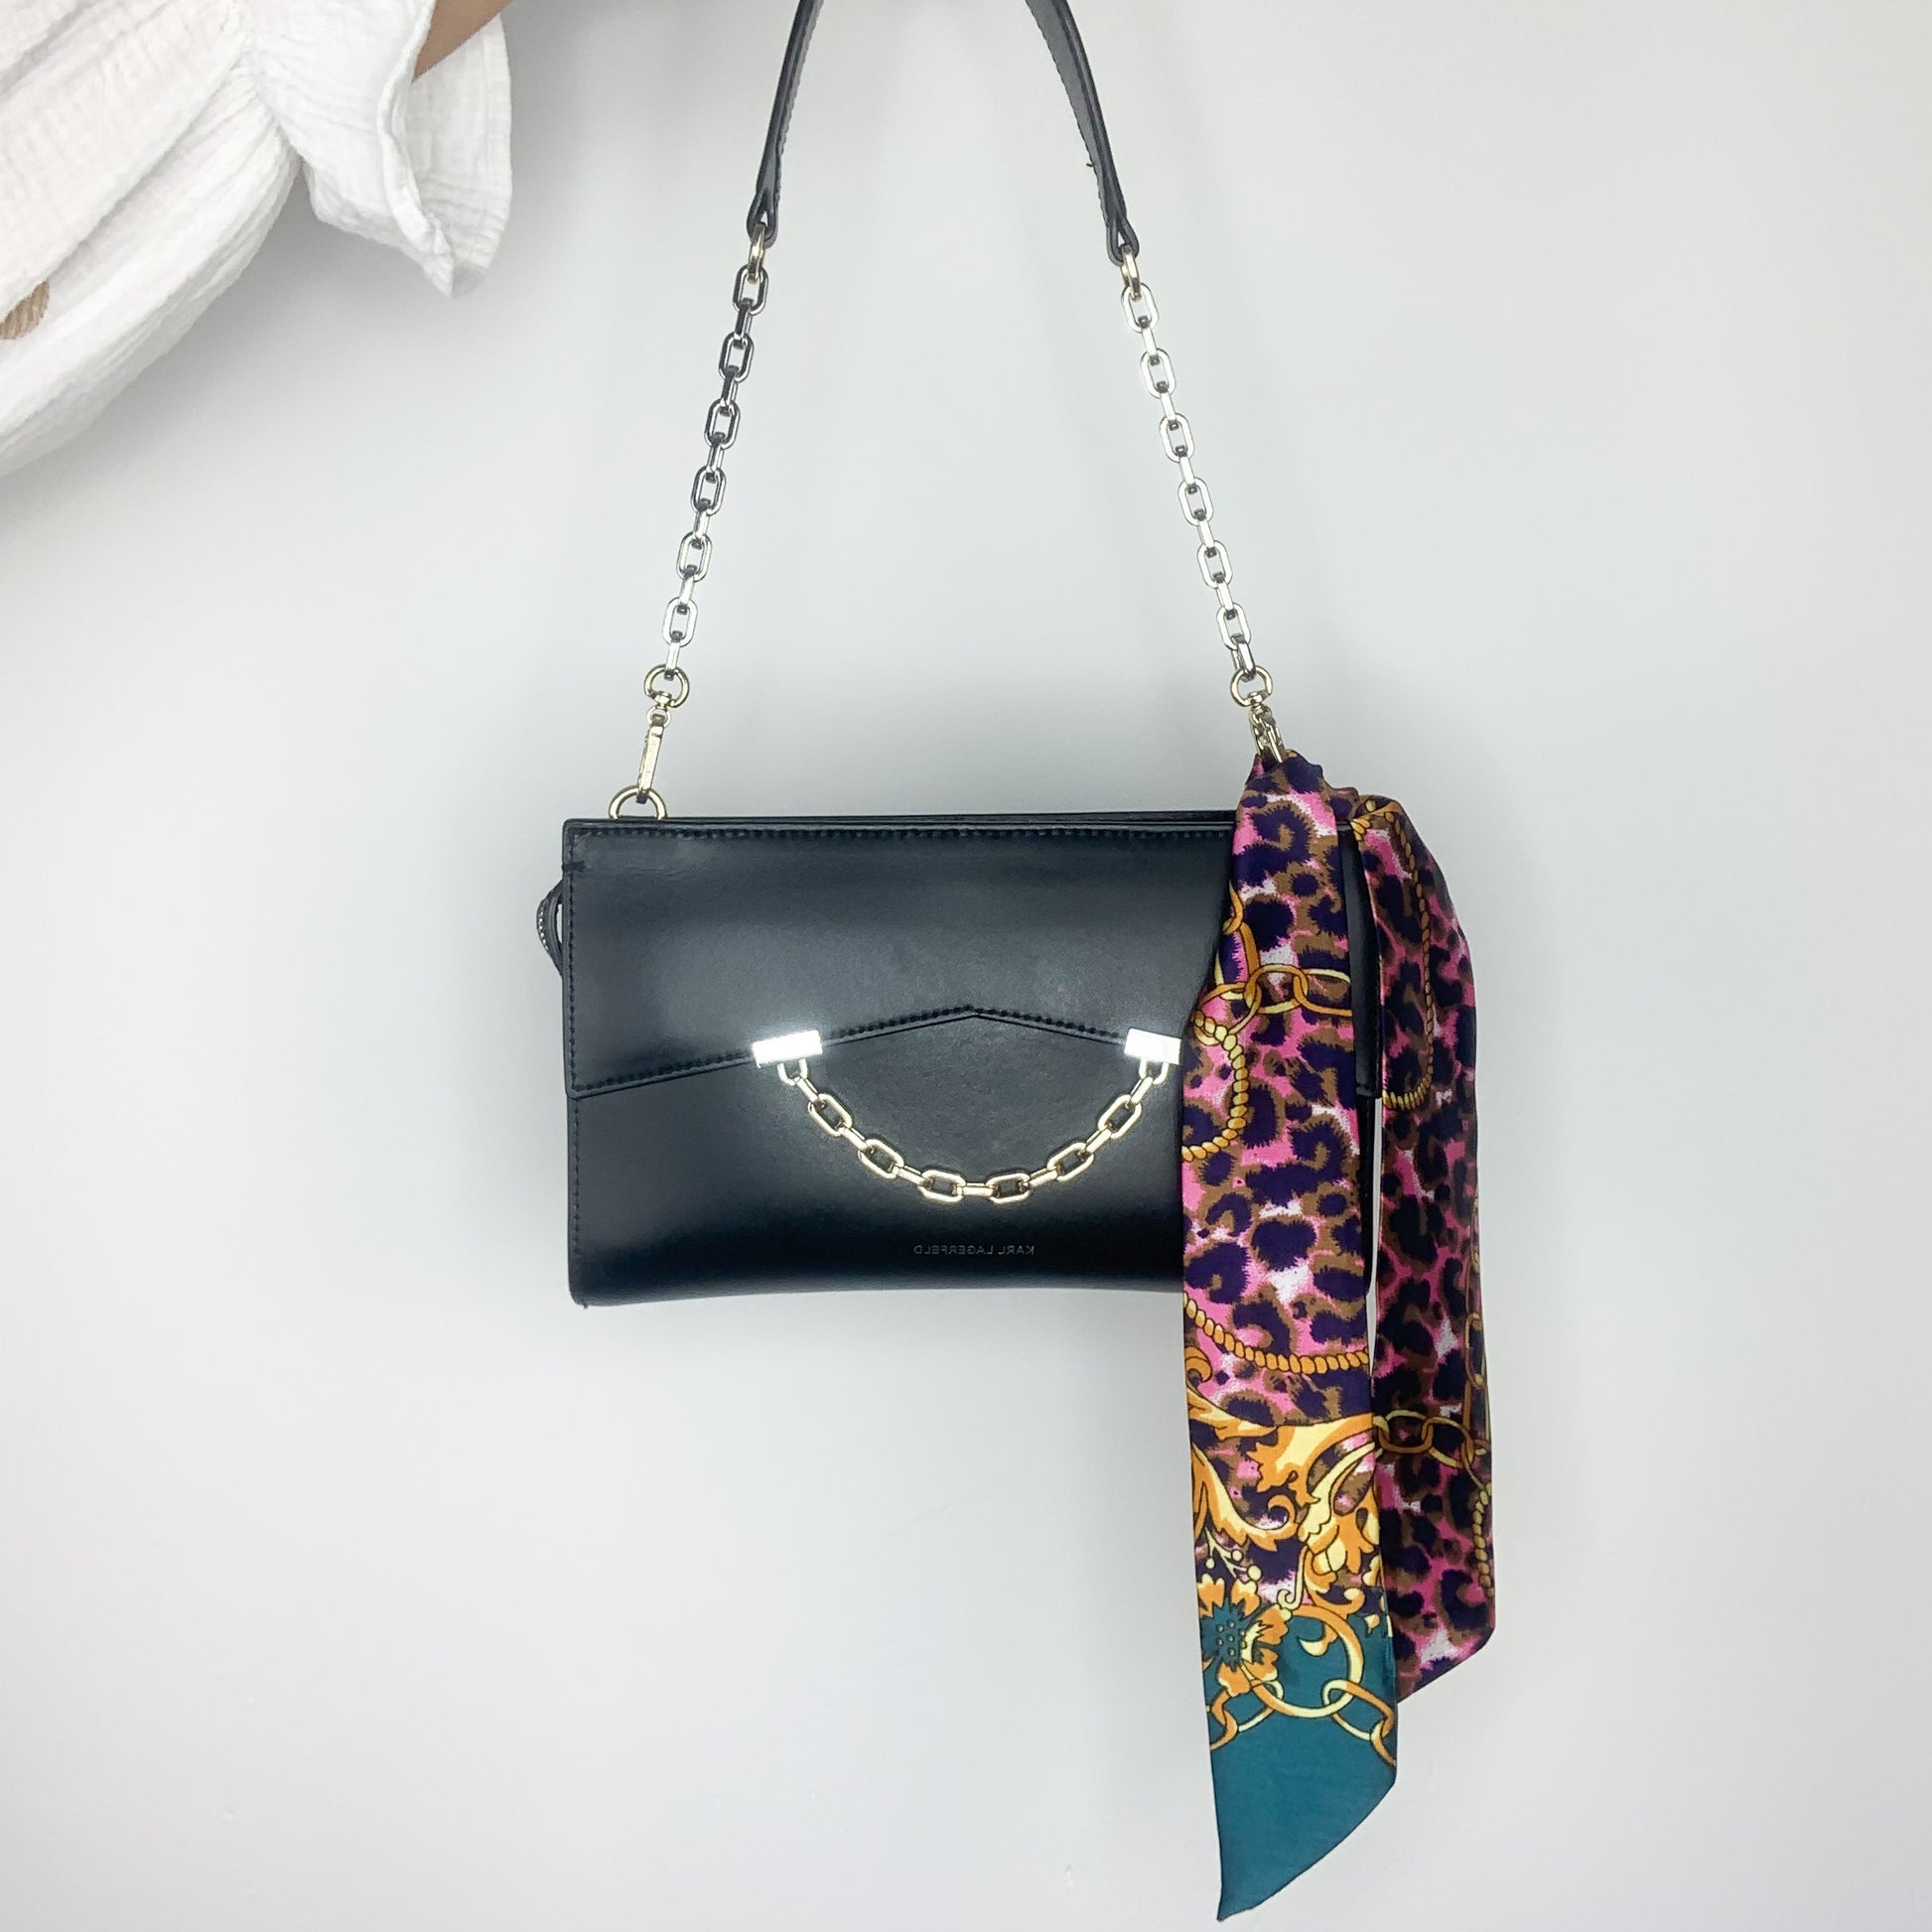 Il s'agit d'une photo d'un sac à main noir avec une chaîne en métal comme bandoulière. Le sac est posé sur une surface blanche et il est ouvert, montrant une doublure intérieure avec un motif léopard dans des tons de violet et jaune.